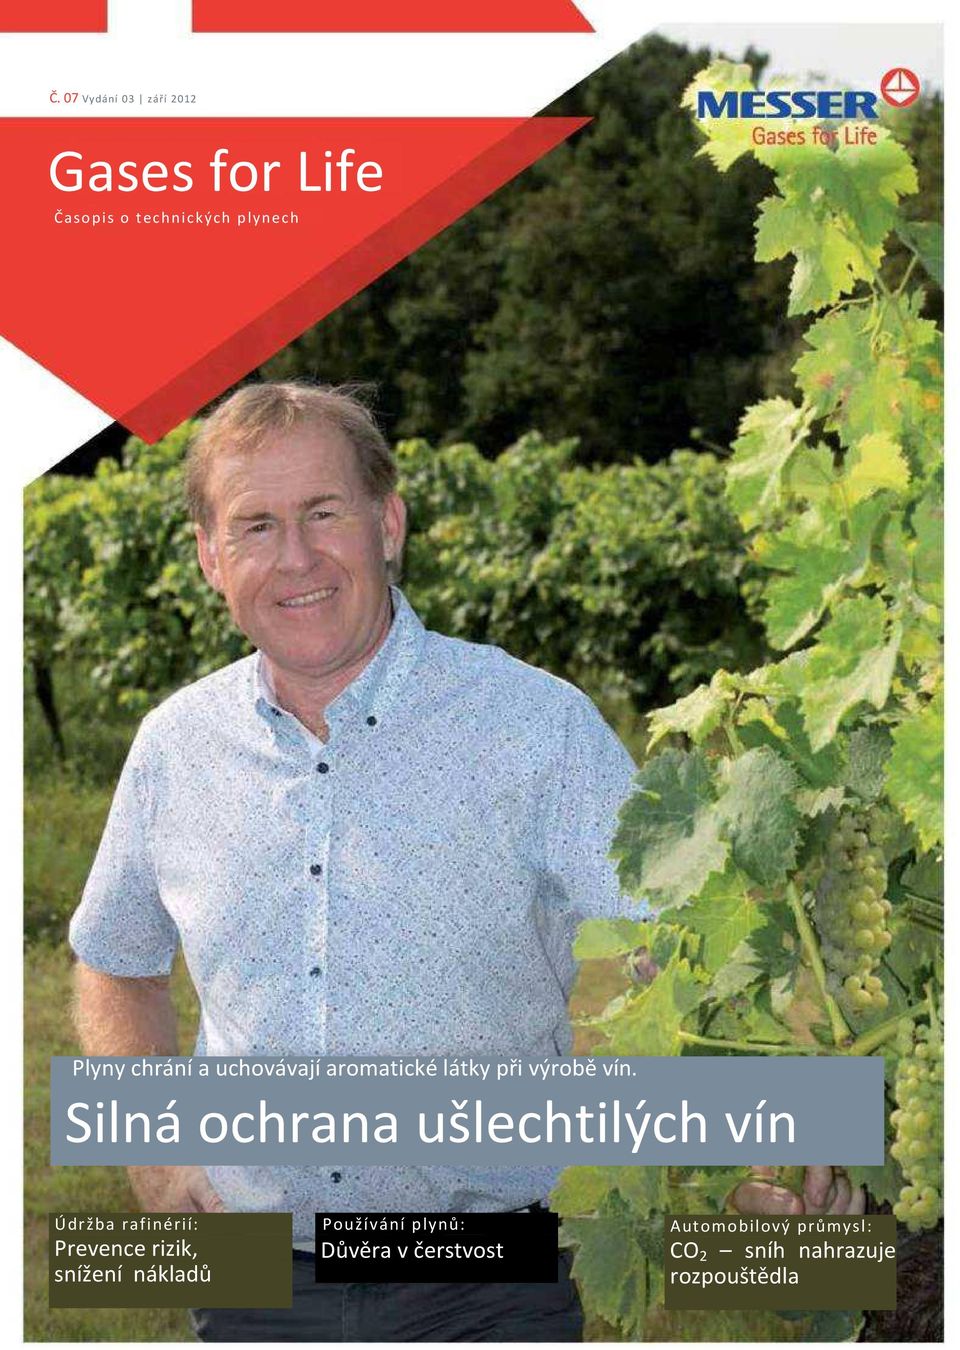 Silná ochrana ušlechtilých vín Údržba rafinérií: Prevence rizik, snížení